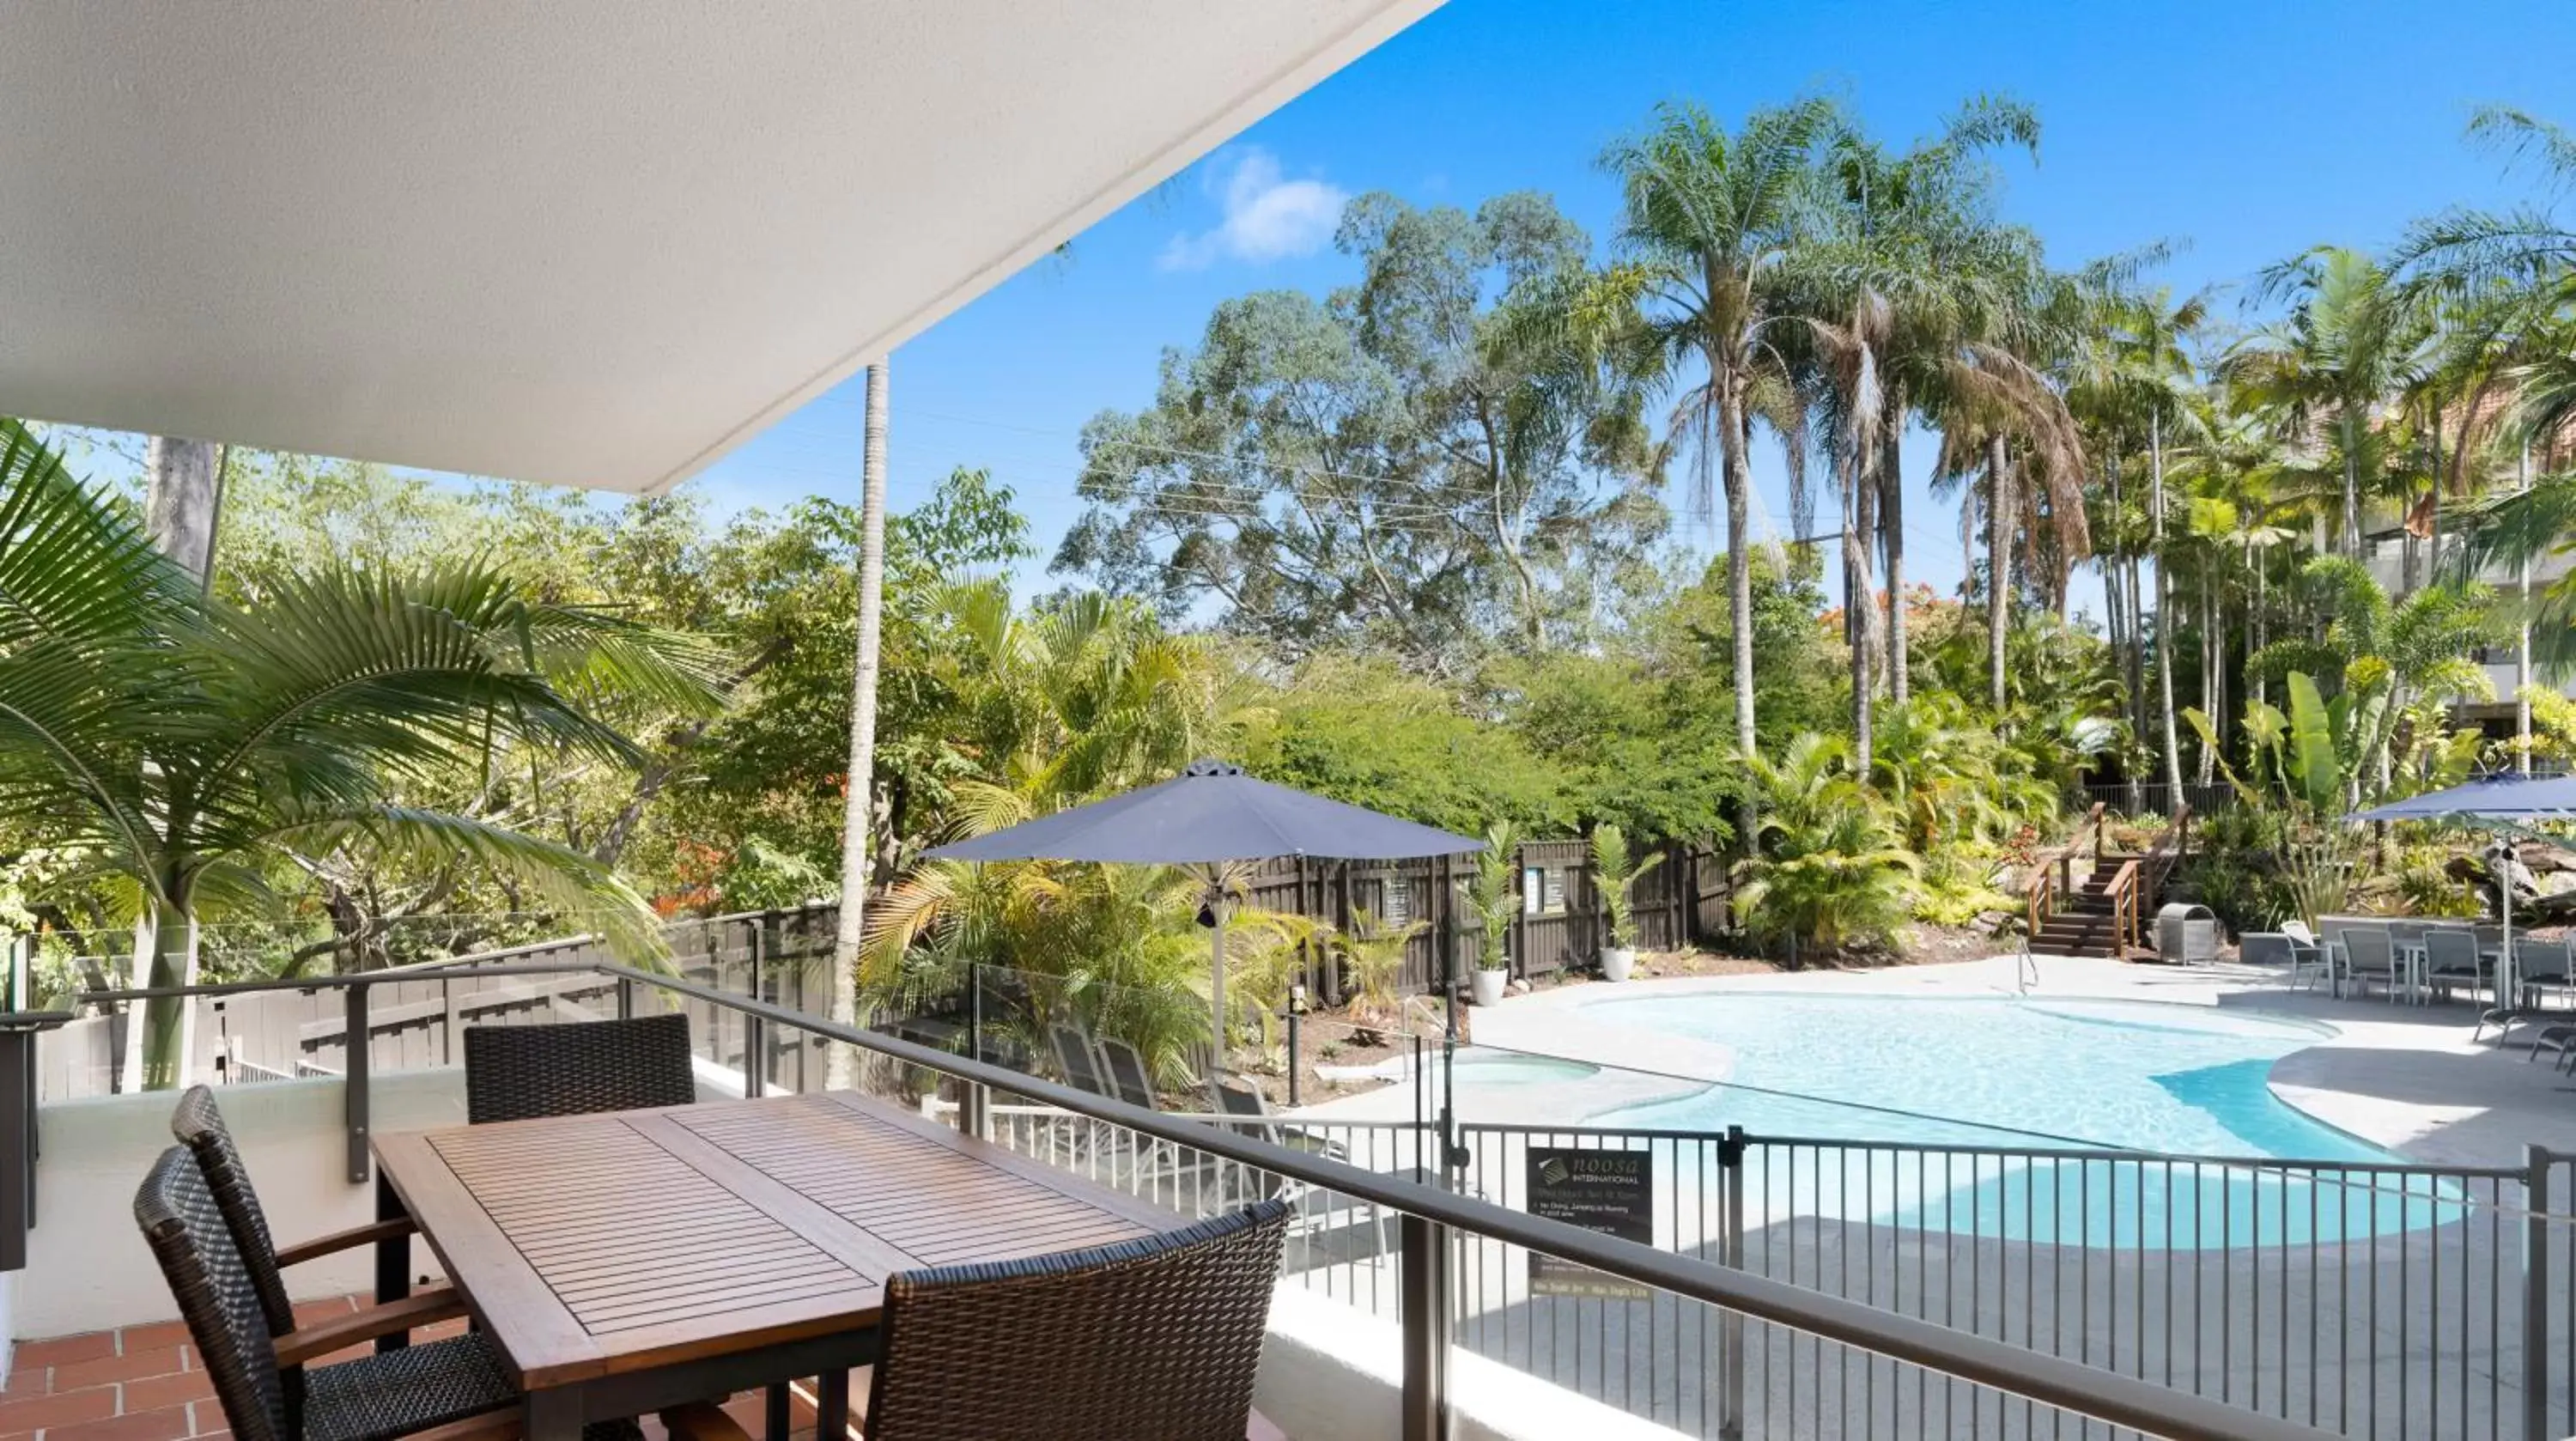 Pool View in Noosa International Resort